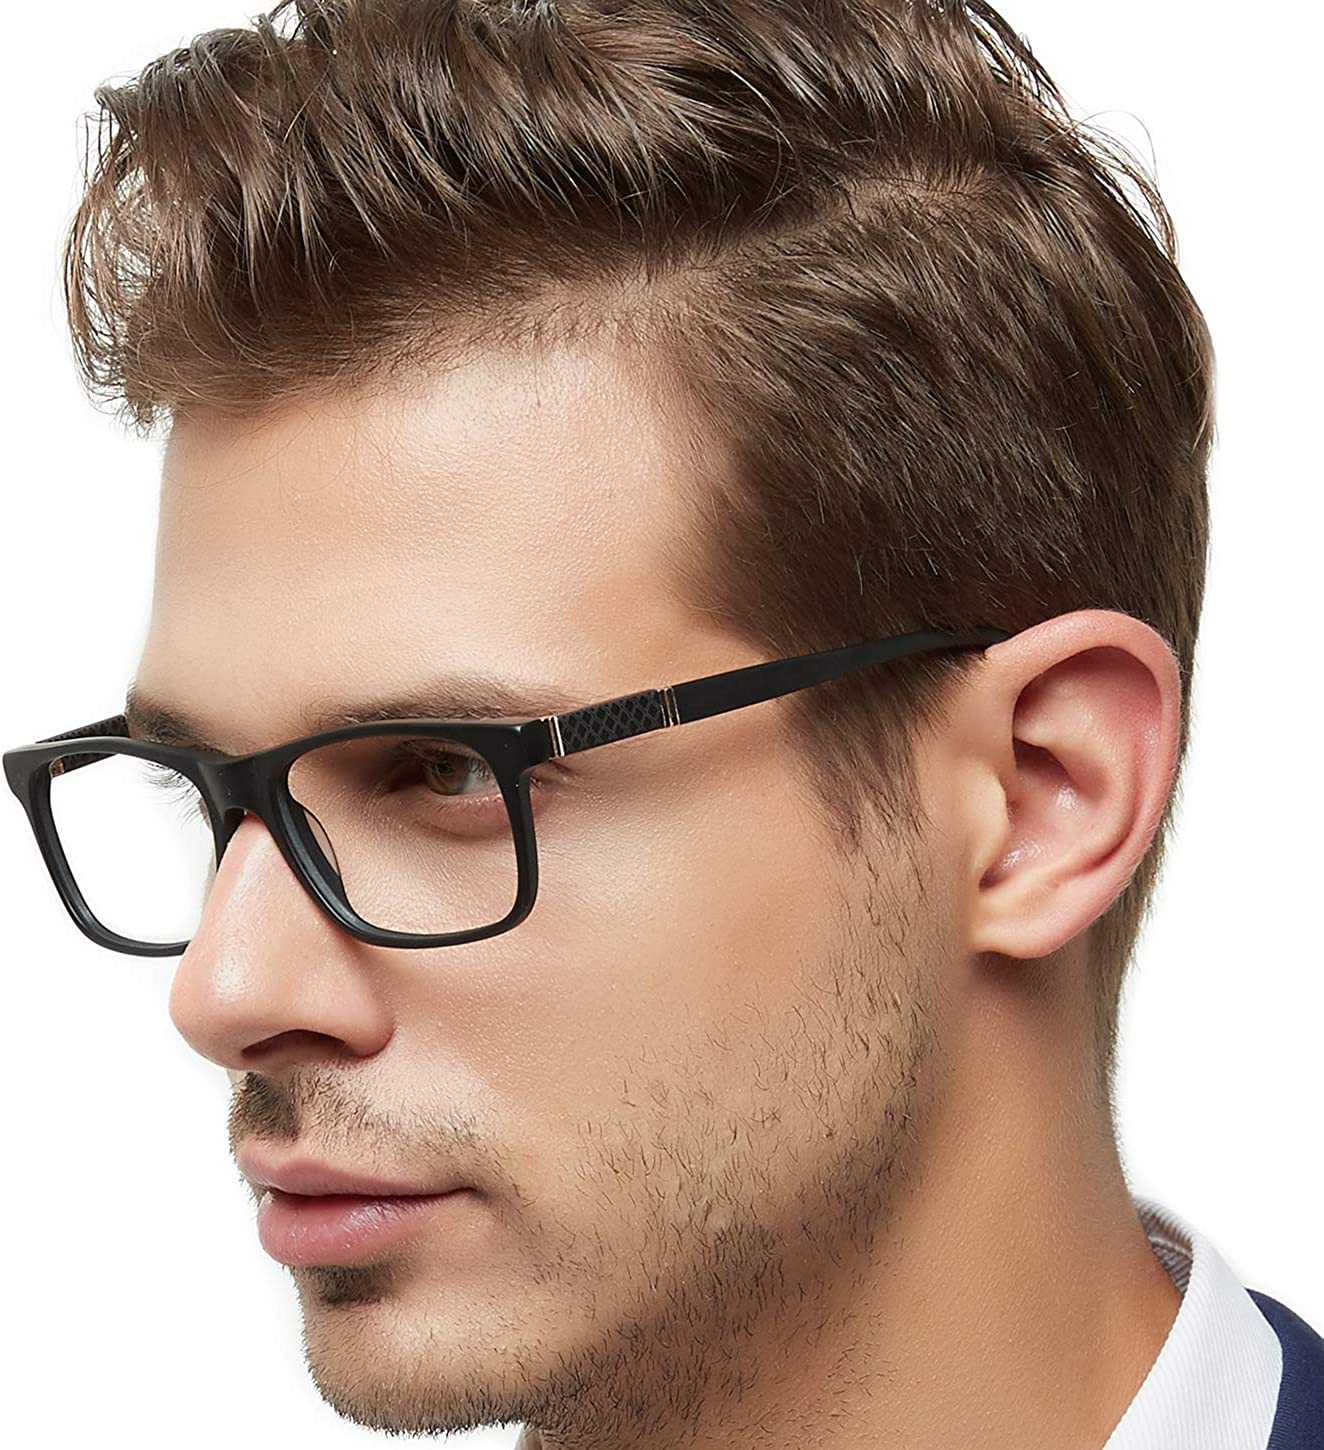 OCCI CHIARI Optical Frames Men Fashion Eyewear Frames Clear Lens Glasses